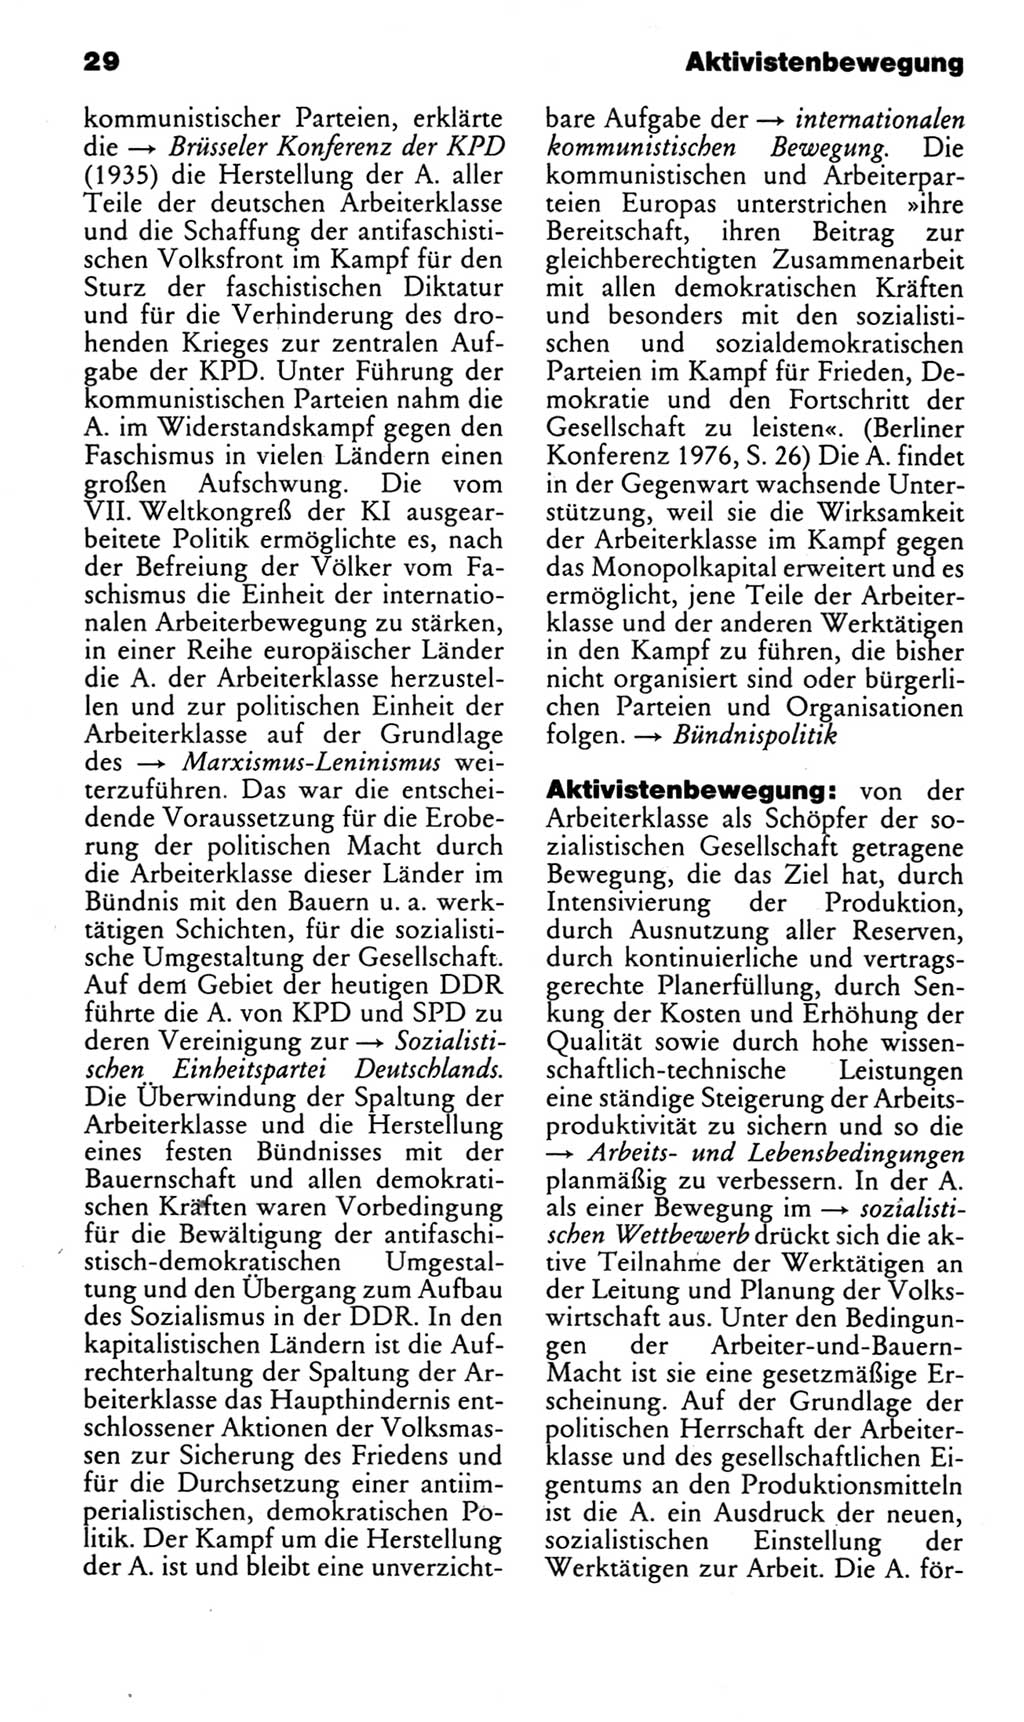 Kleines politisches Wörterbuch [Deutsche Demokratische Republik (DDR)] 1983, Seite 29 (Kl. pol. Wb. DDR 1983, S. 29)